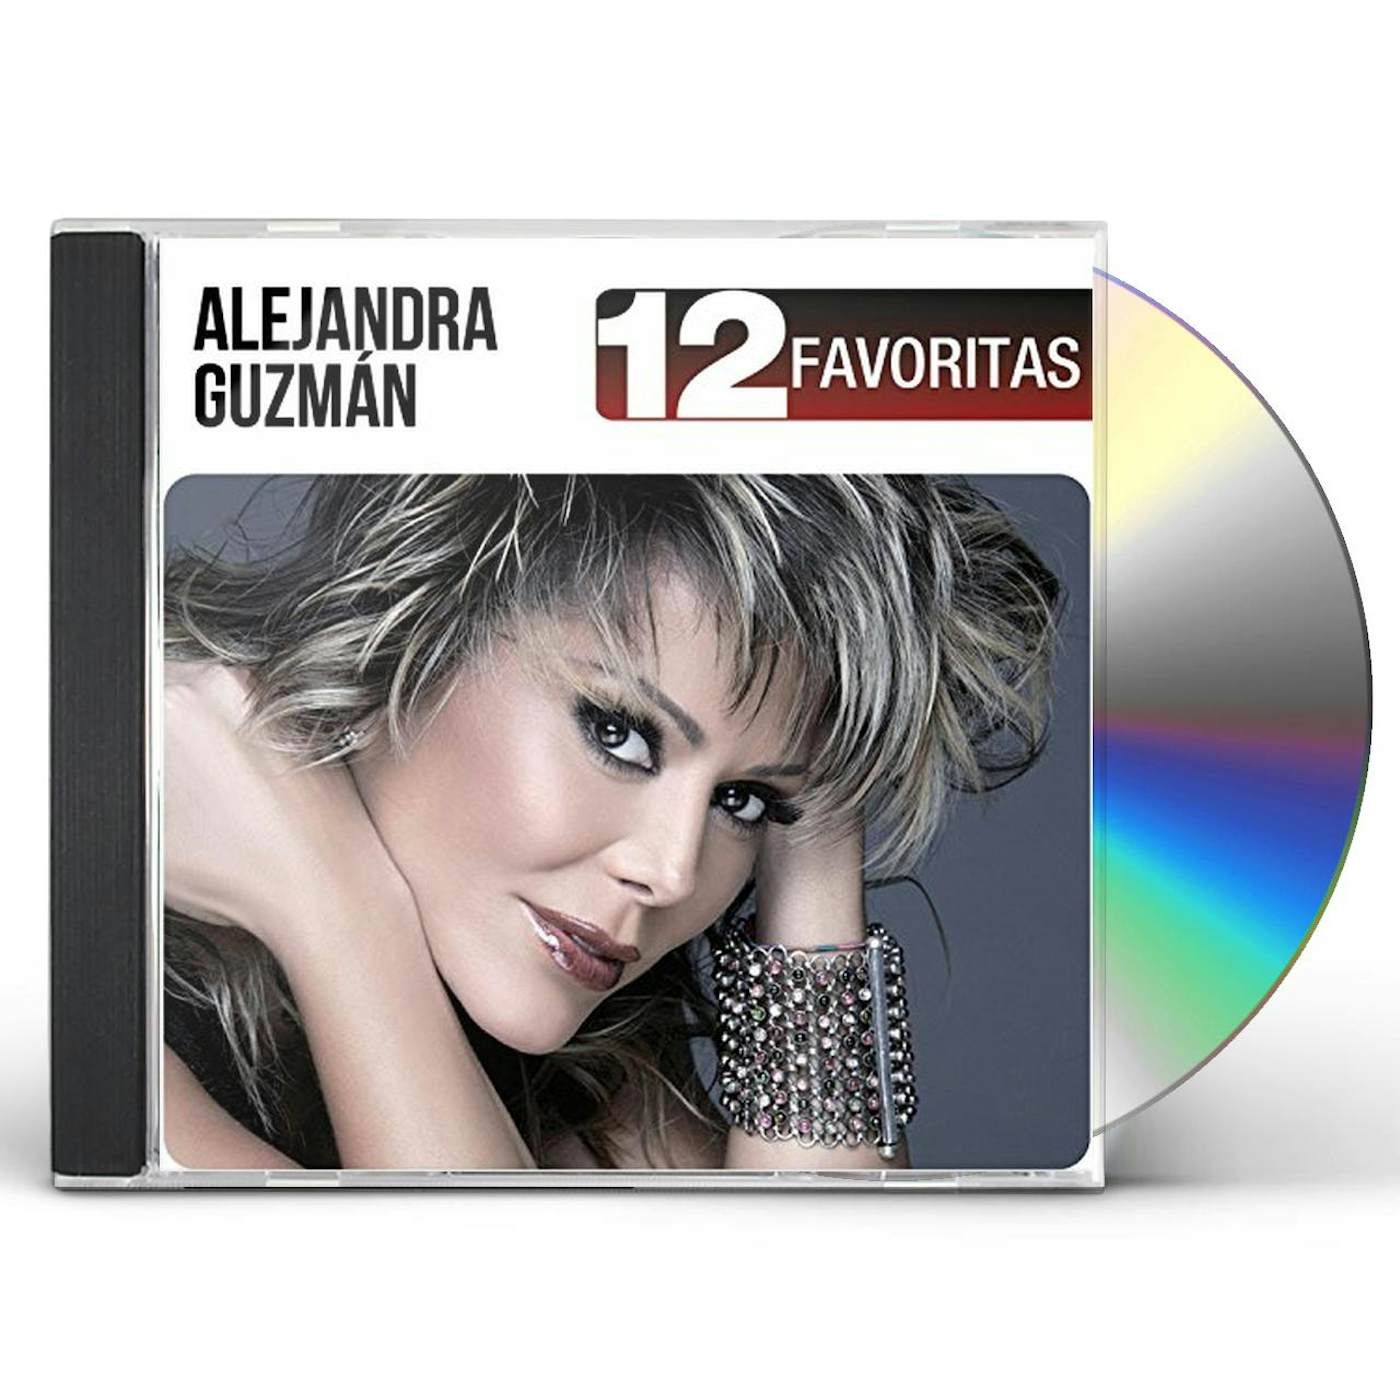 Alejandra Guzman 12 FAVORITAS CD